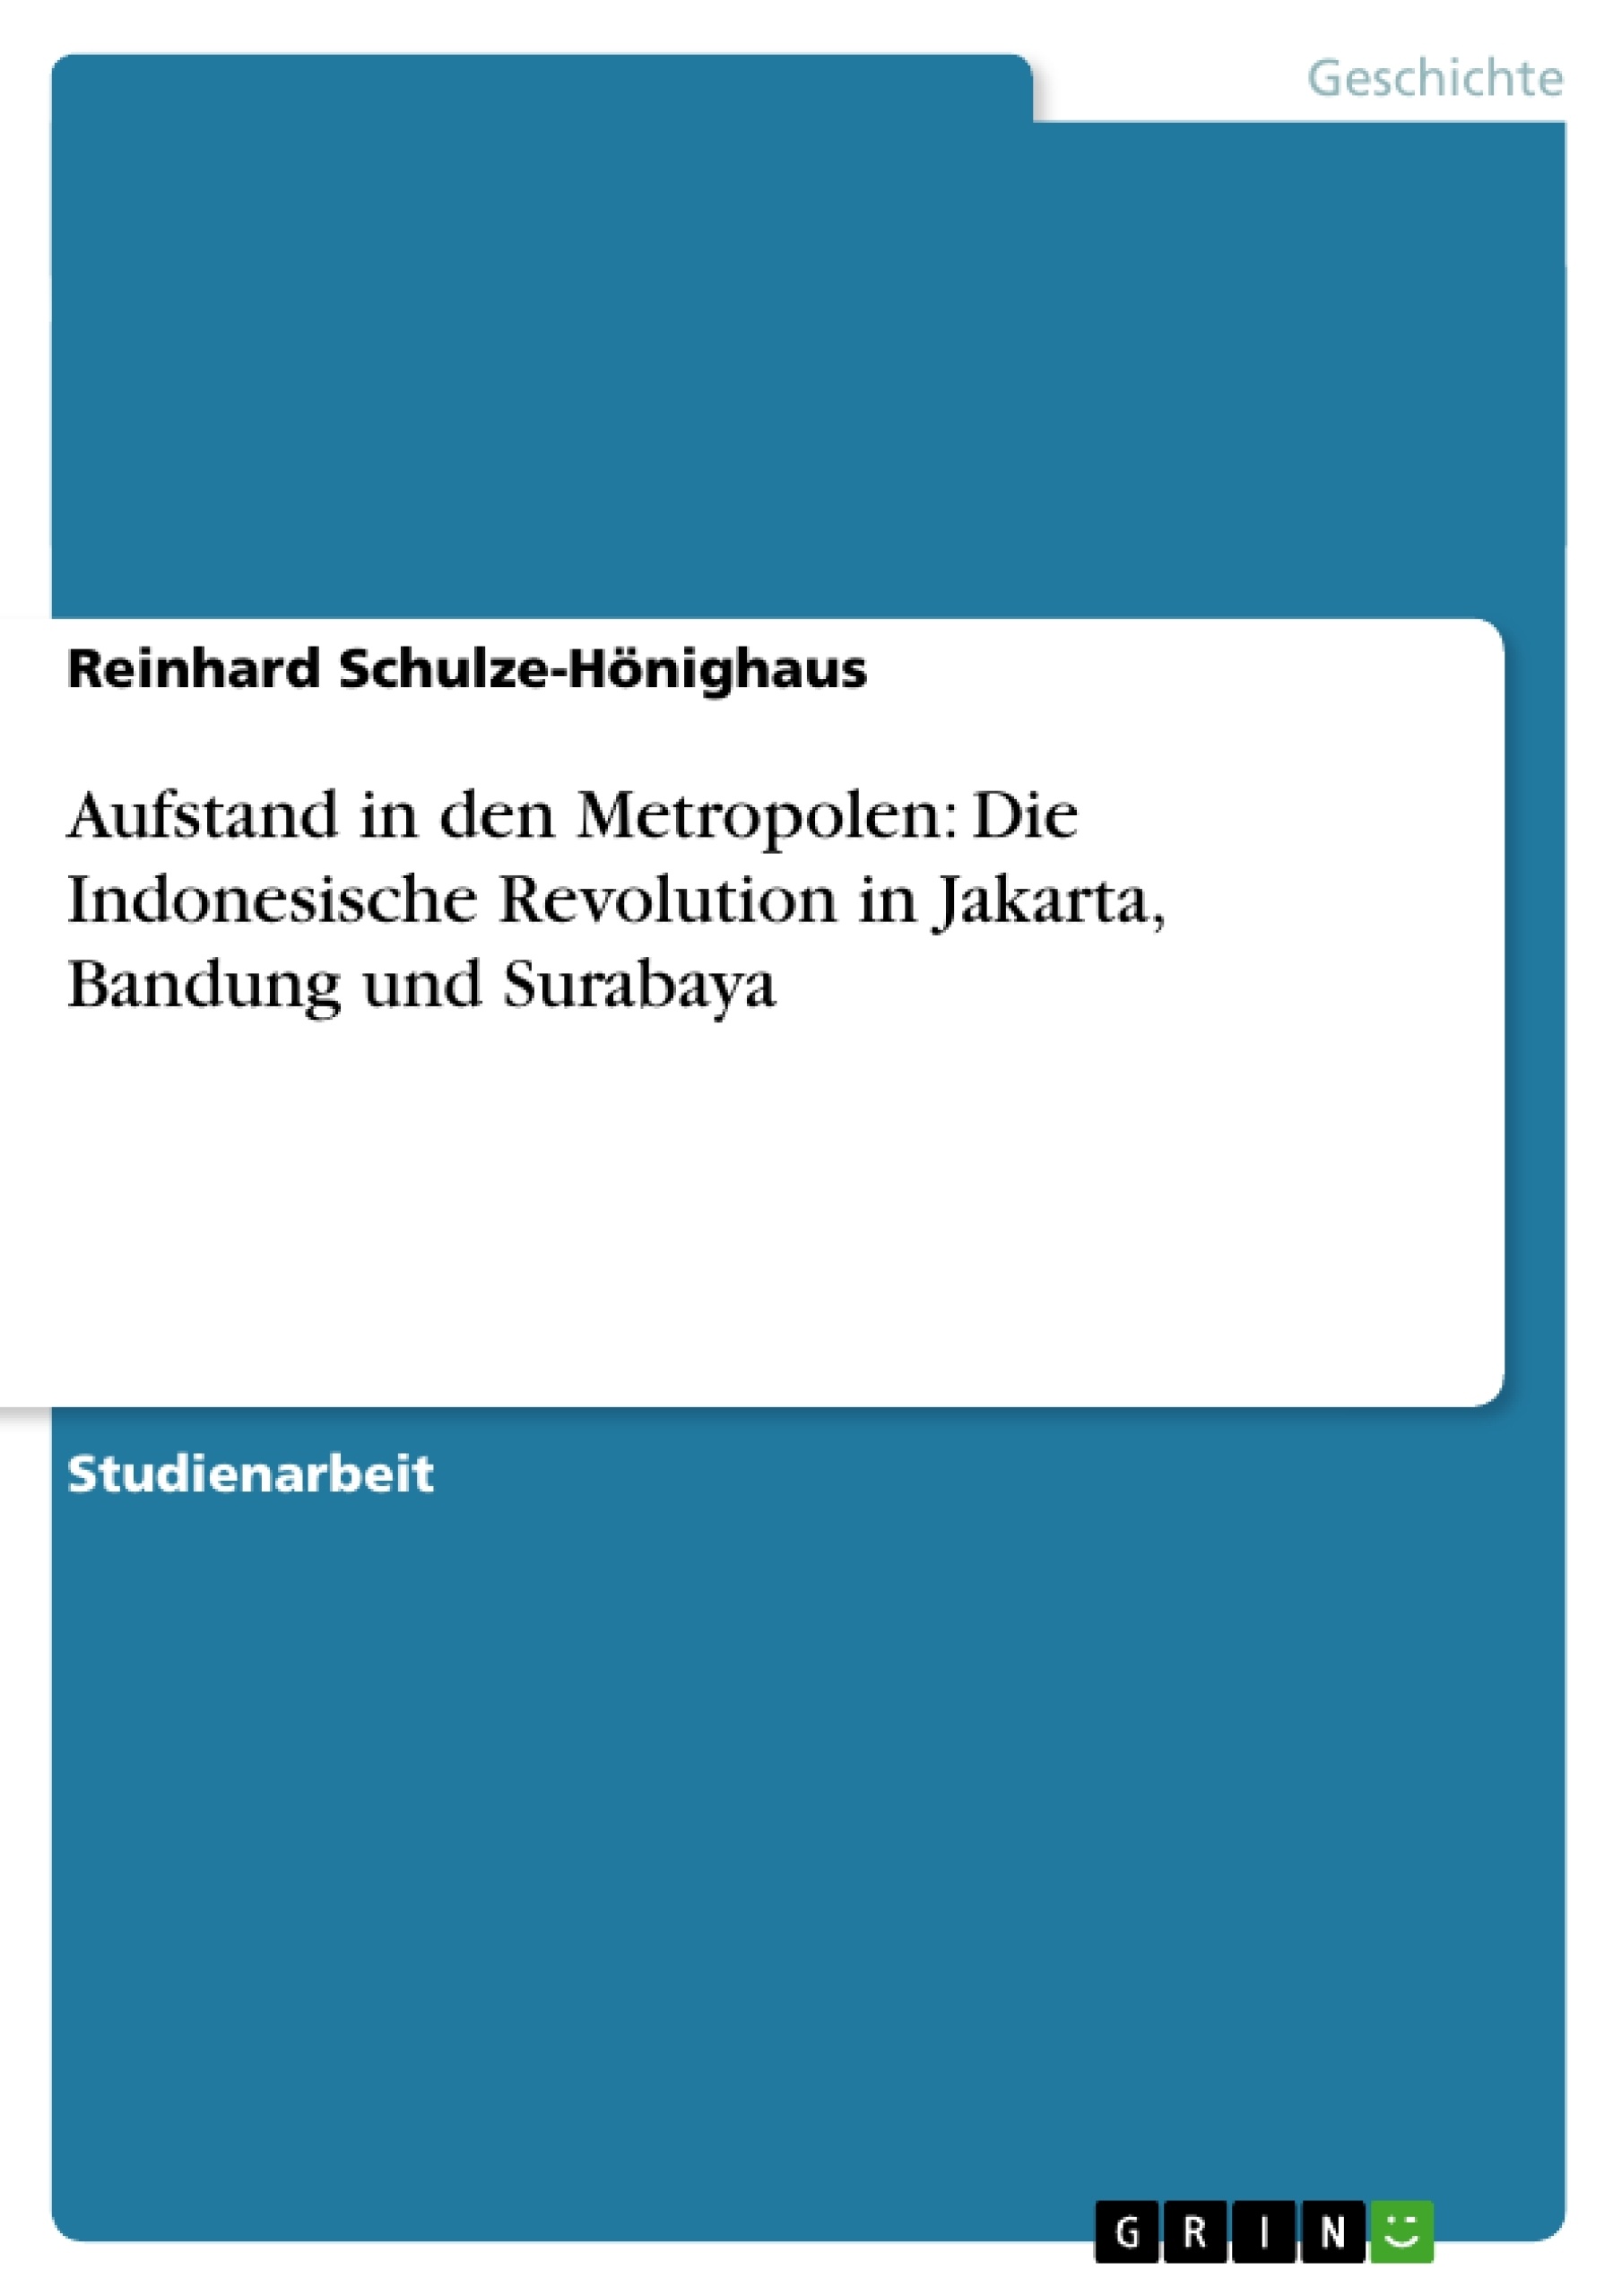 Título: Aufstand in den Metropolen: Die Indonesische Revolution in Jakarta, Bandung und Surabaya